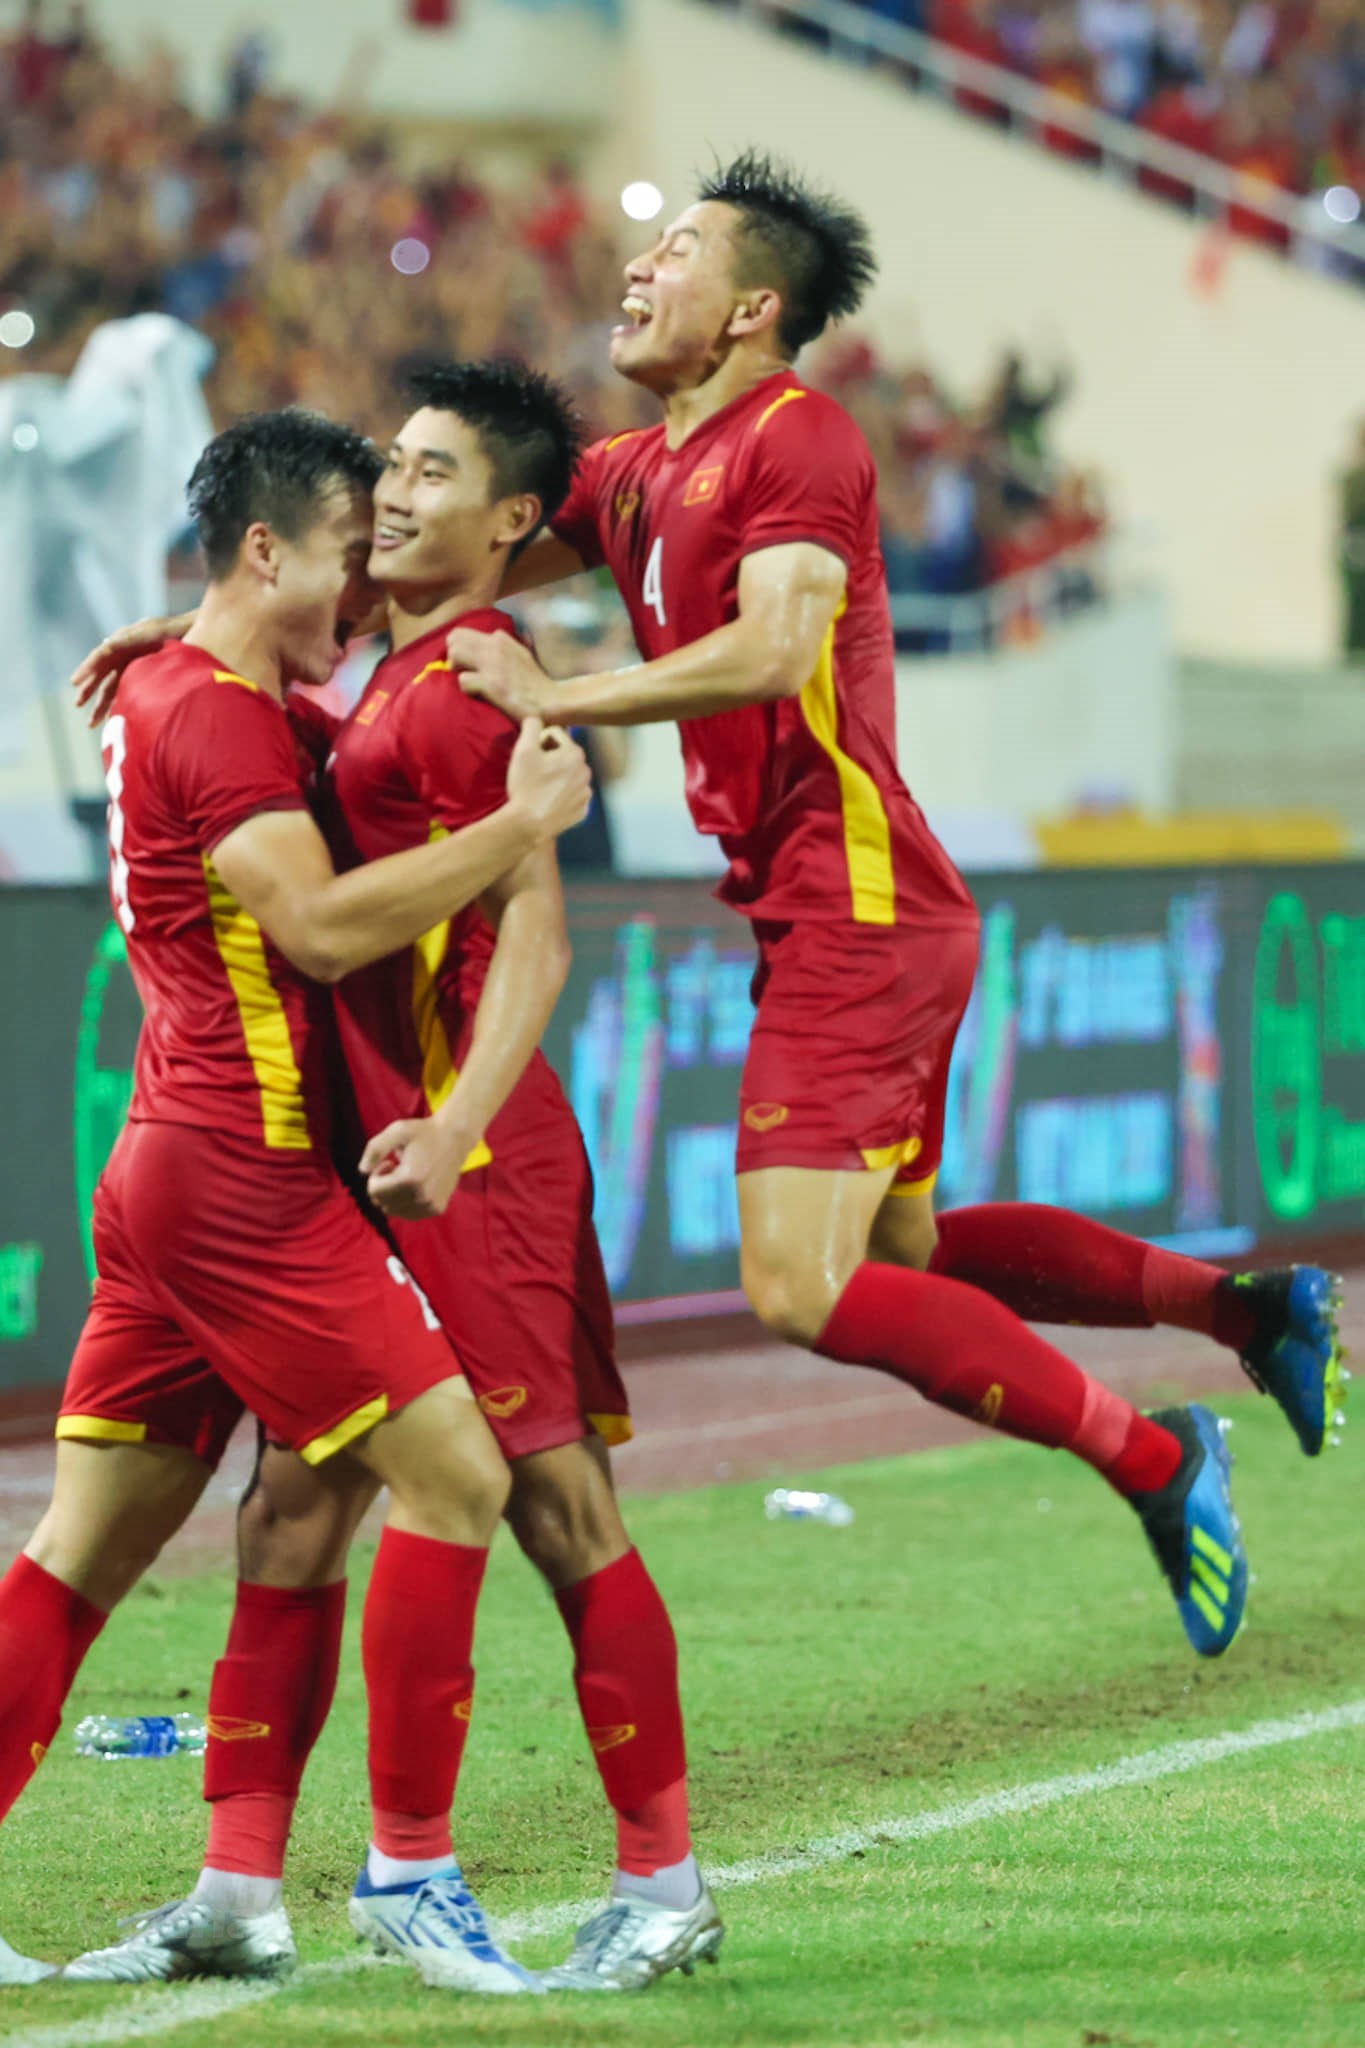 Cùng xem hình ảnh của U23 Việt Nam vô địch SEA Games 31 và cảm nhận nhịp đập trái tim của người hâm mộ. Đội tuyển đã vượt qua mọi thử thách để giành chiến thắng lịch sử này. Họ thật xứng đáng với sự tôn vinh và ngợi khen từ cộng đồng bóng đá Việt Nam.